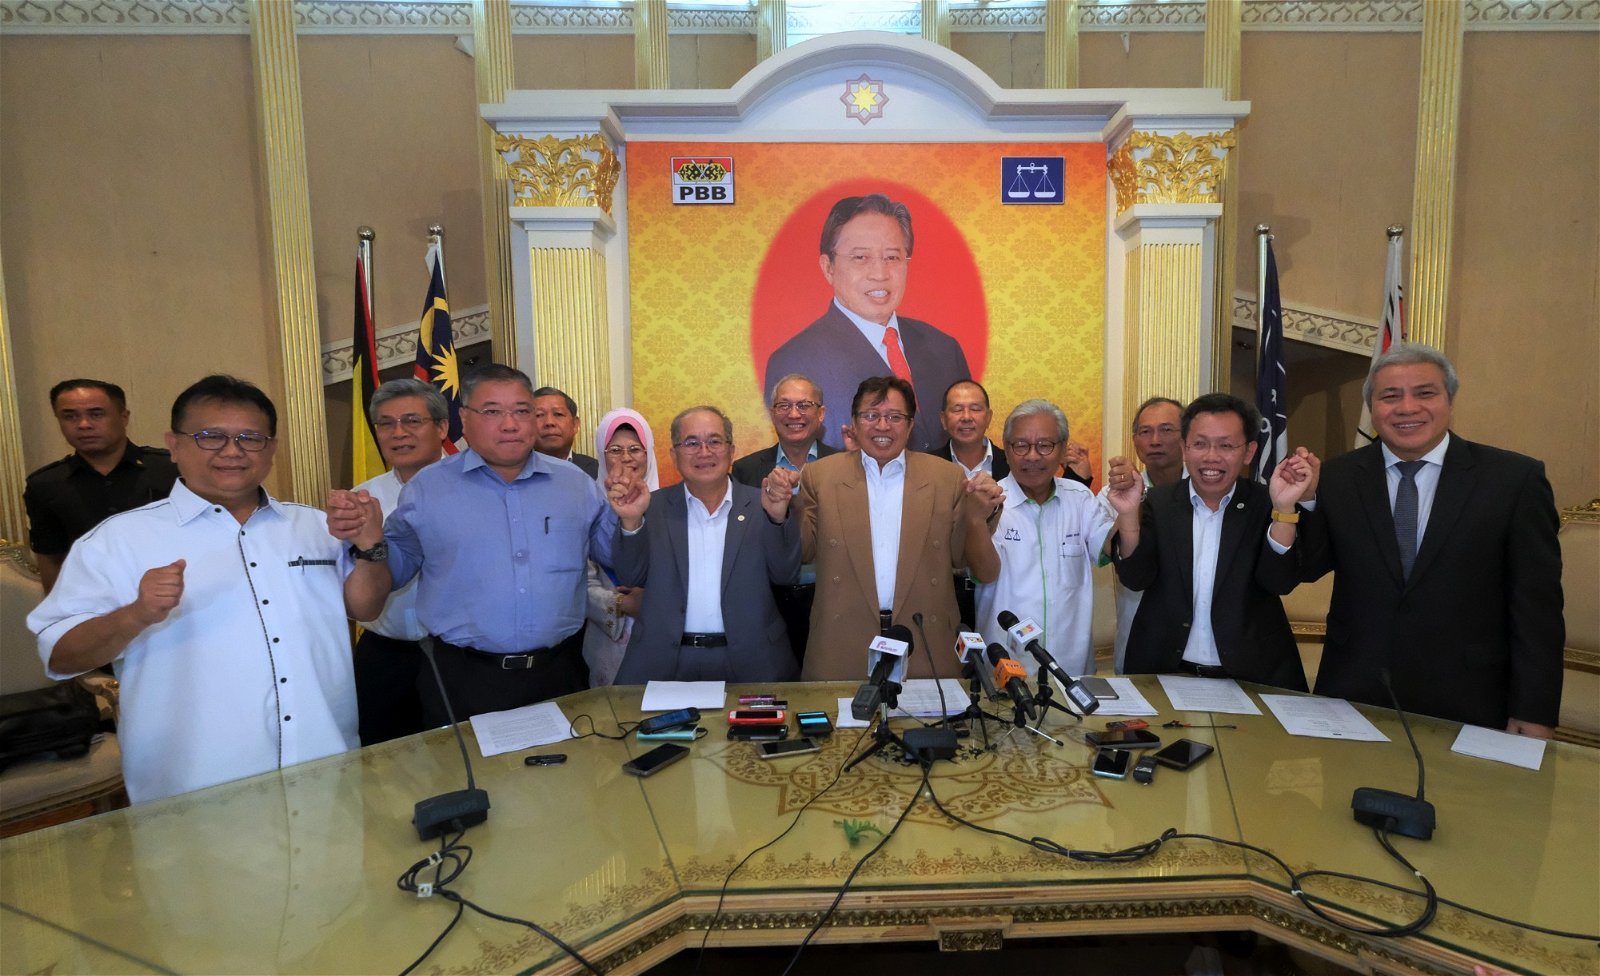 砂拉越国阵4个成员党，即土保党、砂人联党、砂人民党与民进党，于今年6月12日宣布退出国阵，组成砂州政党联盟（GPS）。